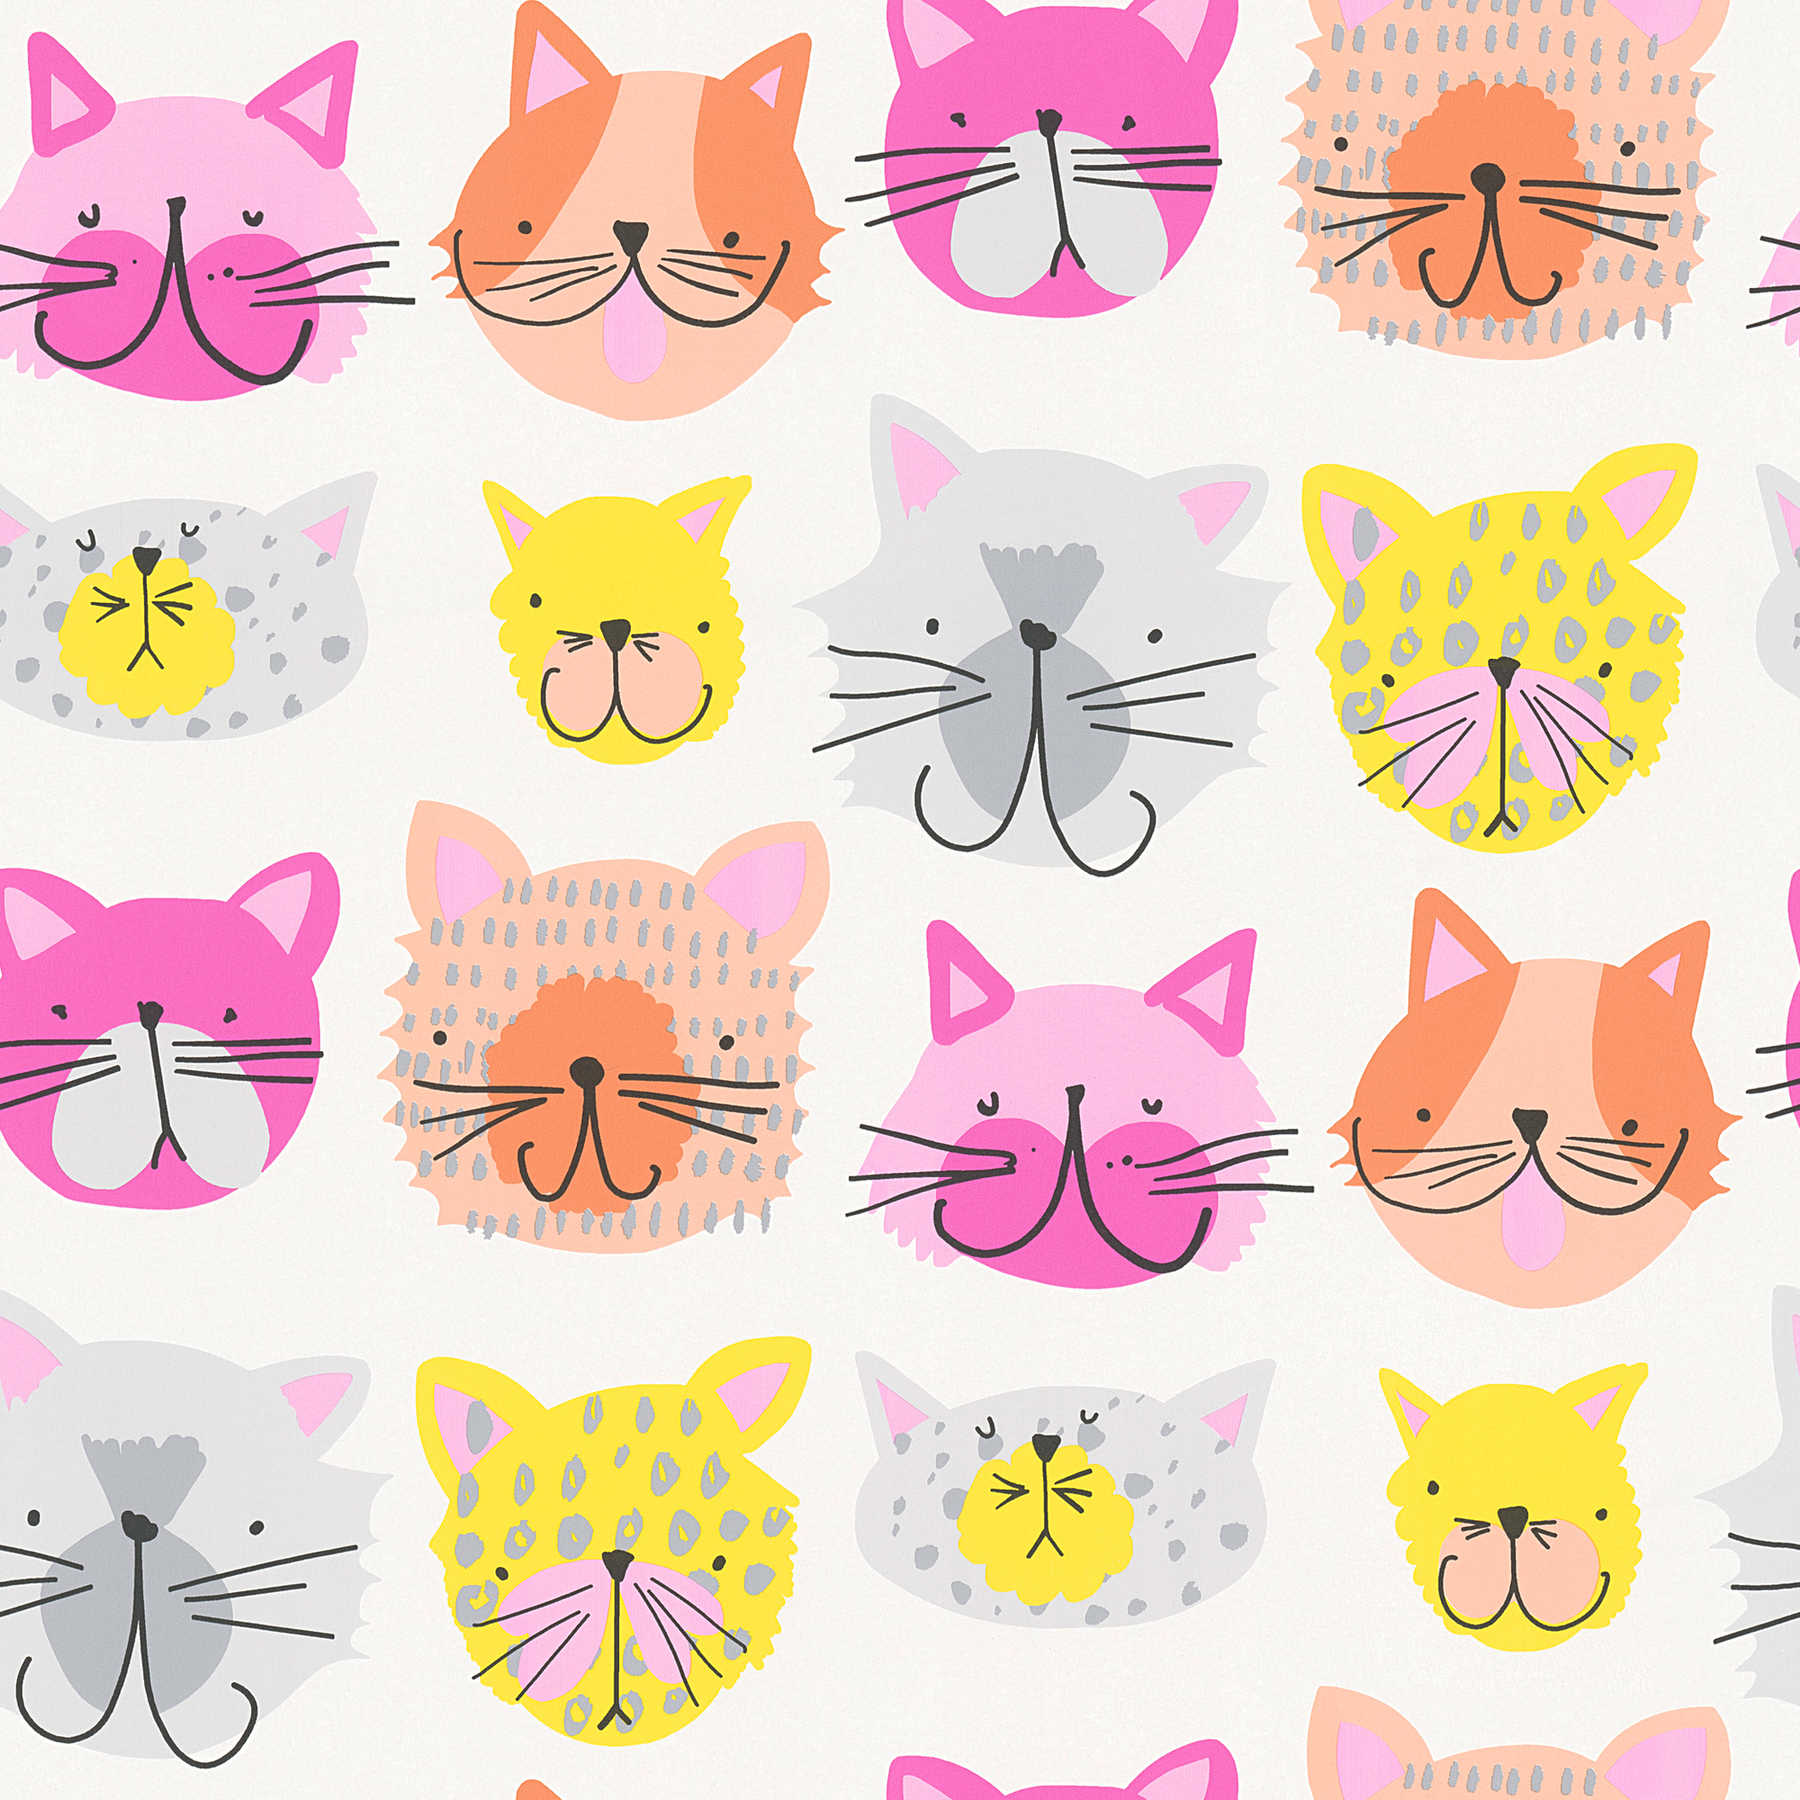 Kleurrijk Kattenbehang in Komische Stijl voor Kinderkamer - Roze, Geel
